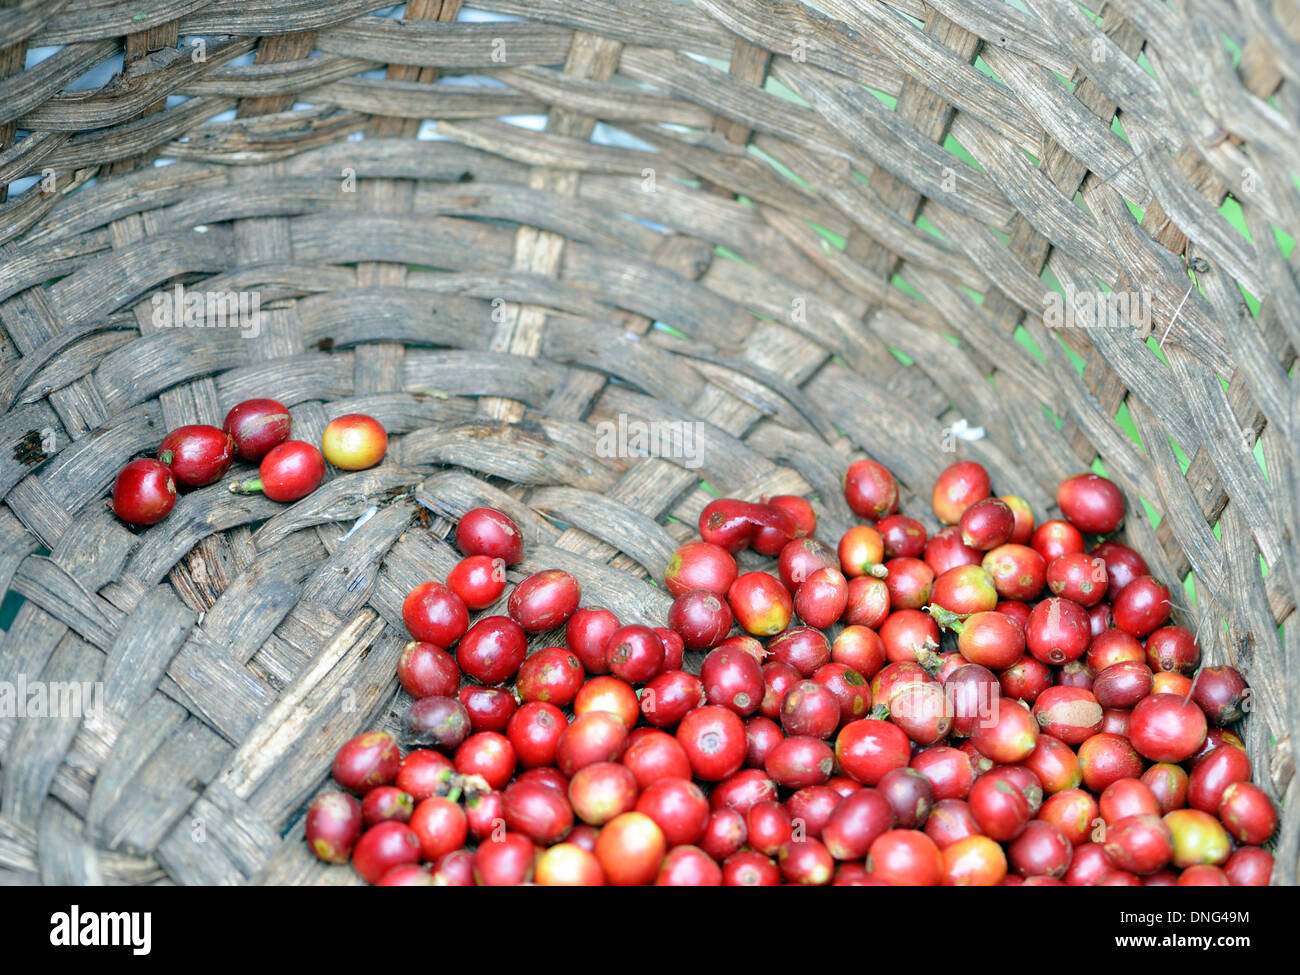 Venu du café (Coffea arabica) fruits, baies, cerises se situent dans le fond d'un panier de cueillette. Santa Elena, Costa Rica. Banque D'Images